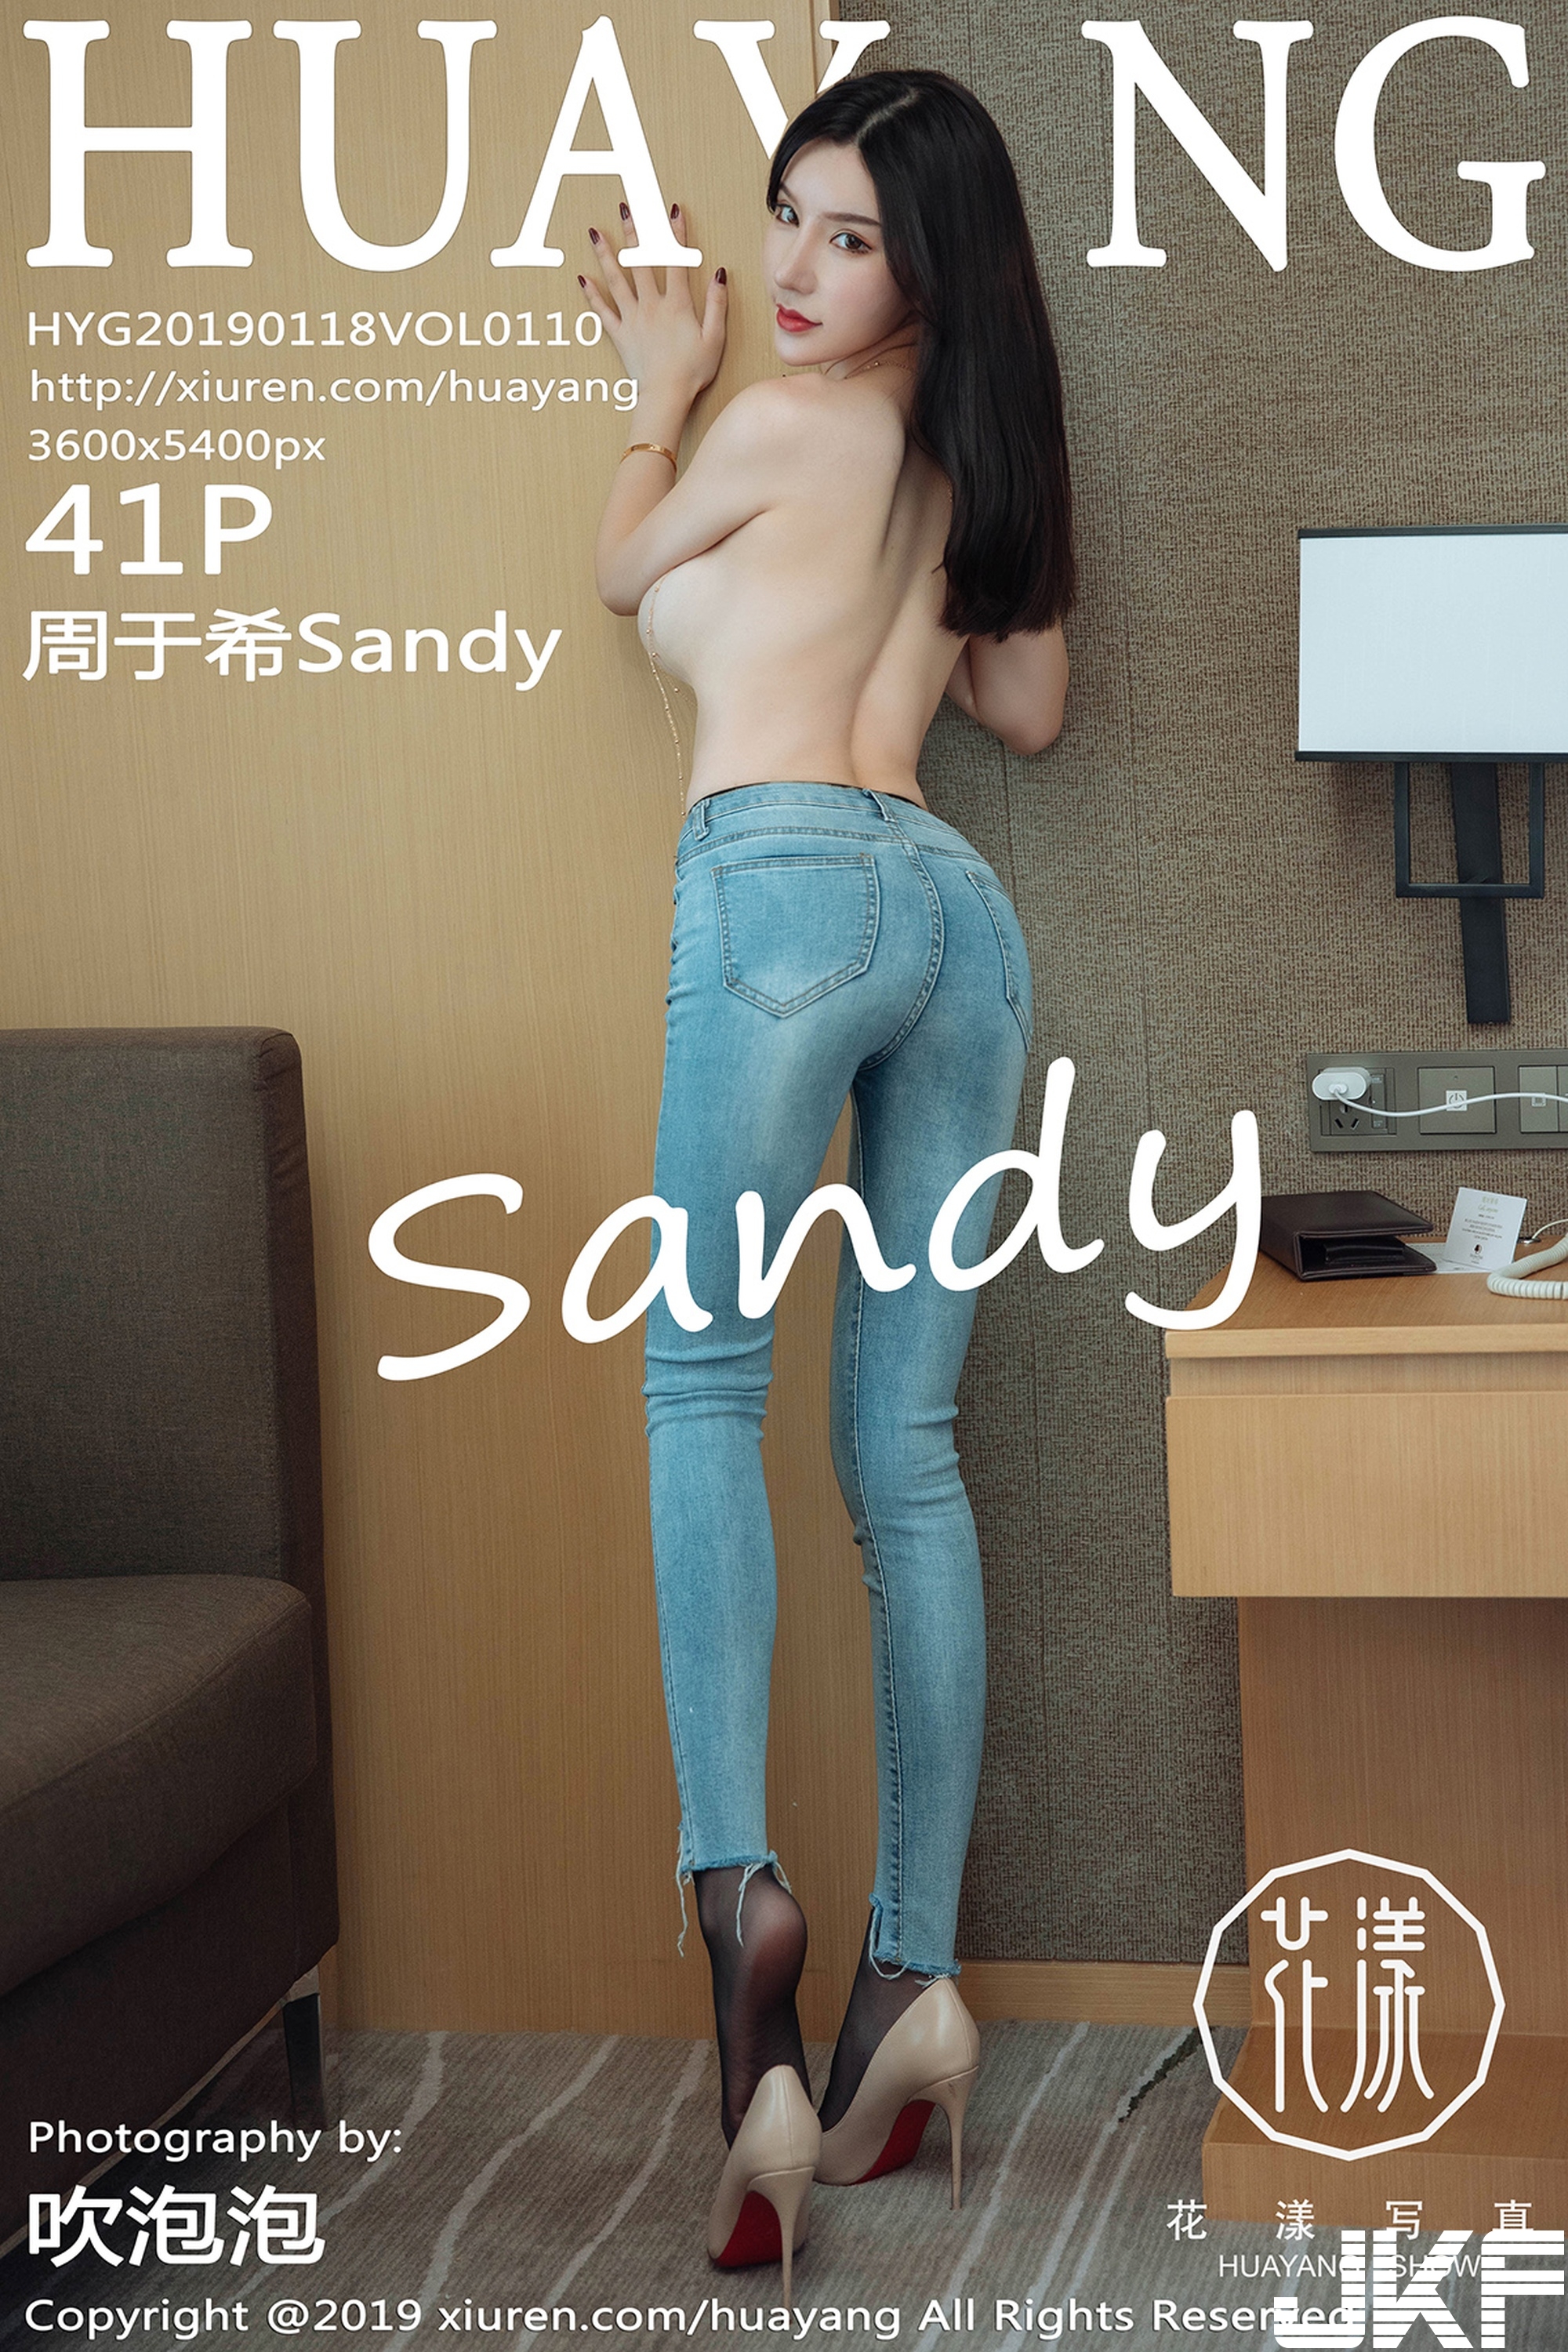 【HuaYang花漾系列】2019.01.18 VOL.110 周于希Sandy 性感寫真【42P】 - 貼圖 - 絲襪美腿 -